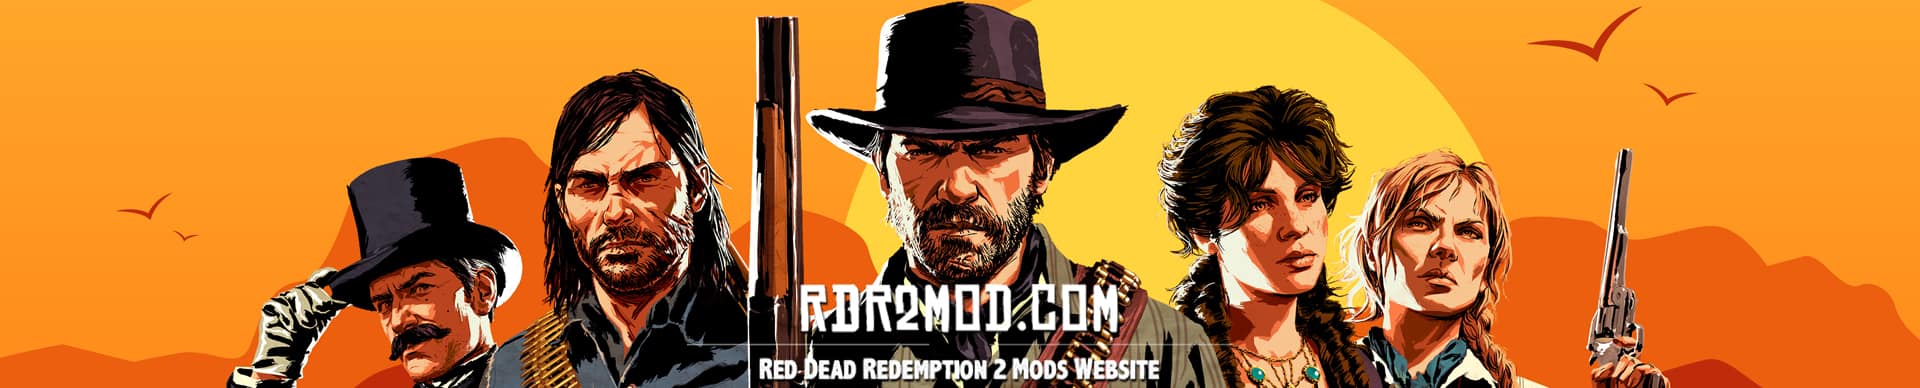 aluminium Permanent par Red Dead Redemption 2 FAQ - Red Dead Redemption 2 Mods | RDR2 Mods